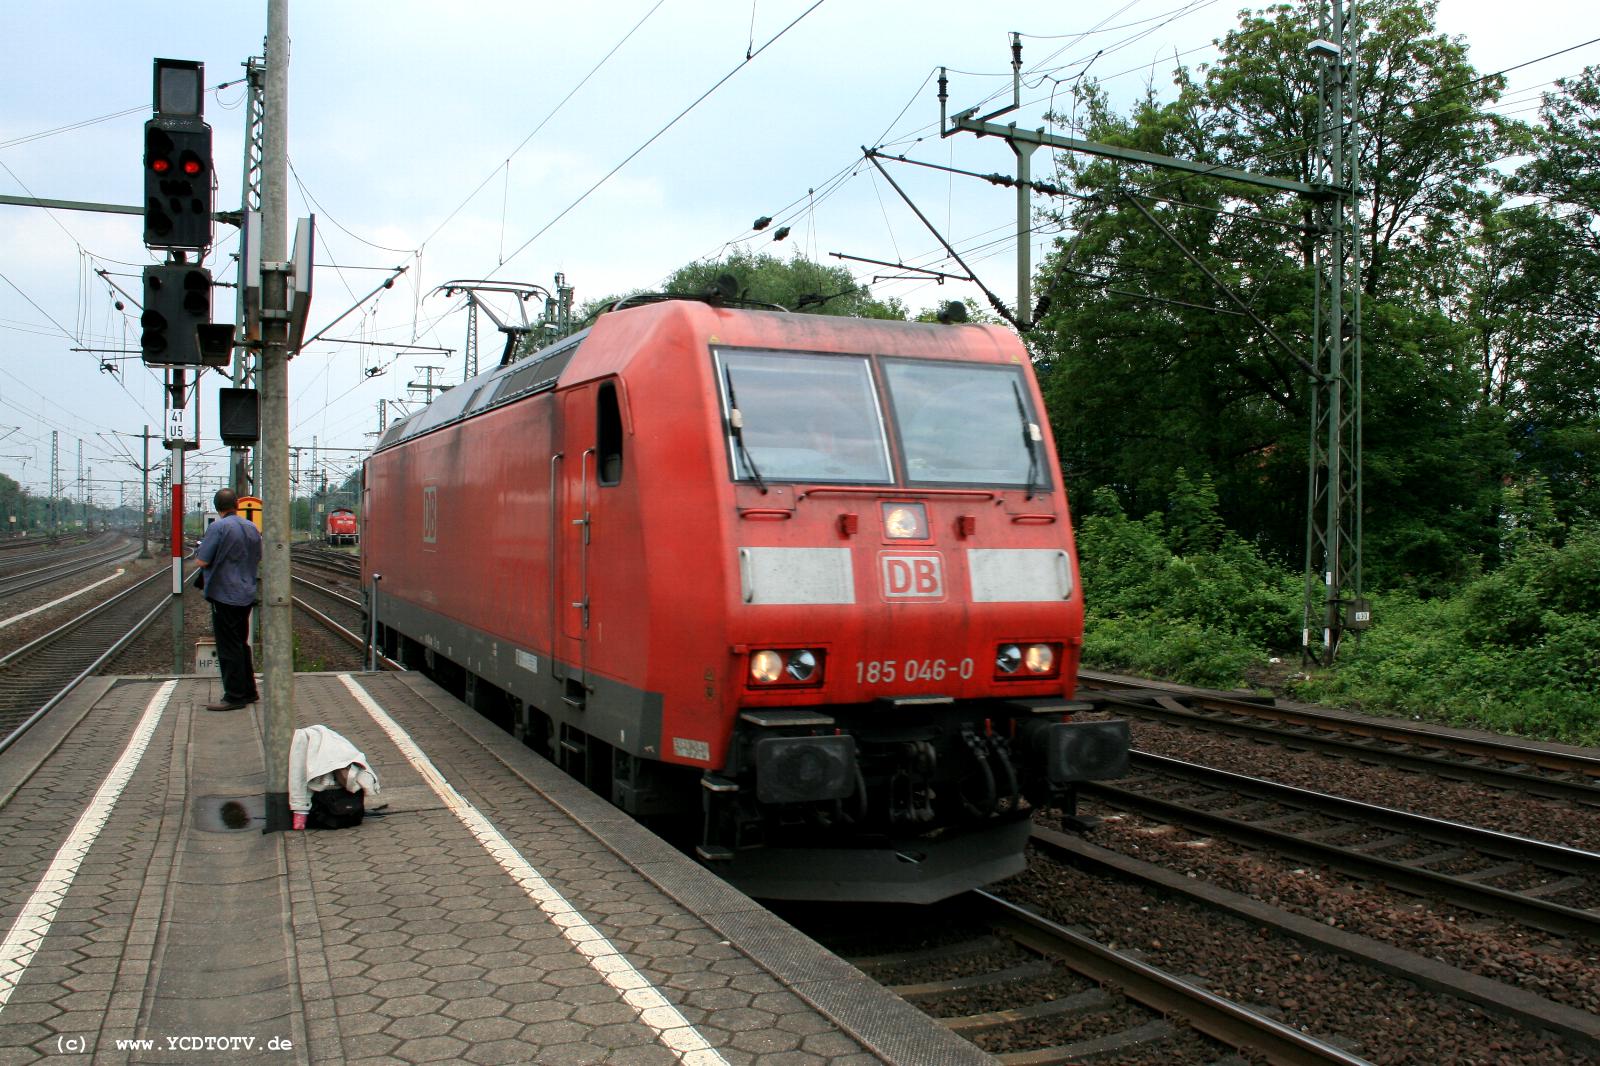  Bahnhof Hamburg-Harburg, 18.05.2011, 15:11 185 046-0 Solo Richtung Norden 